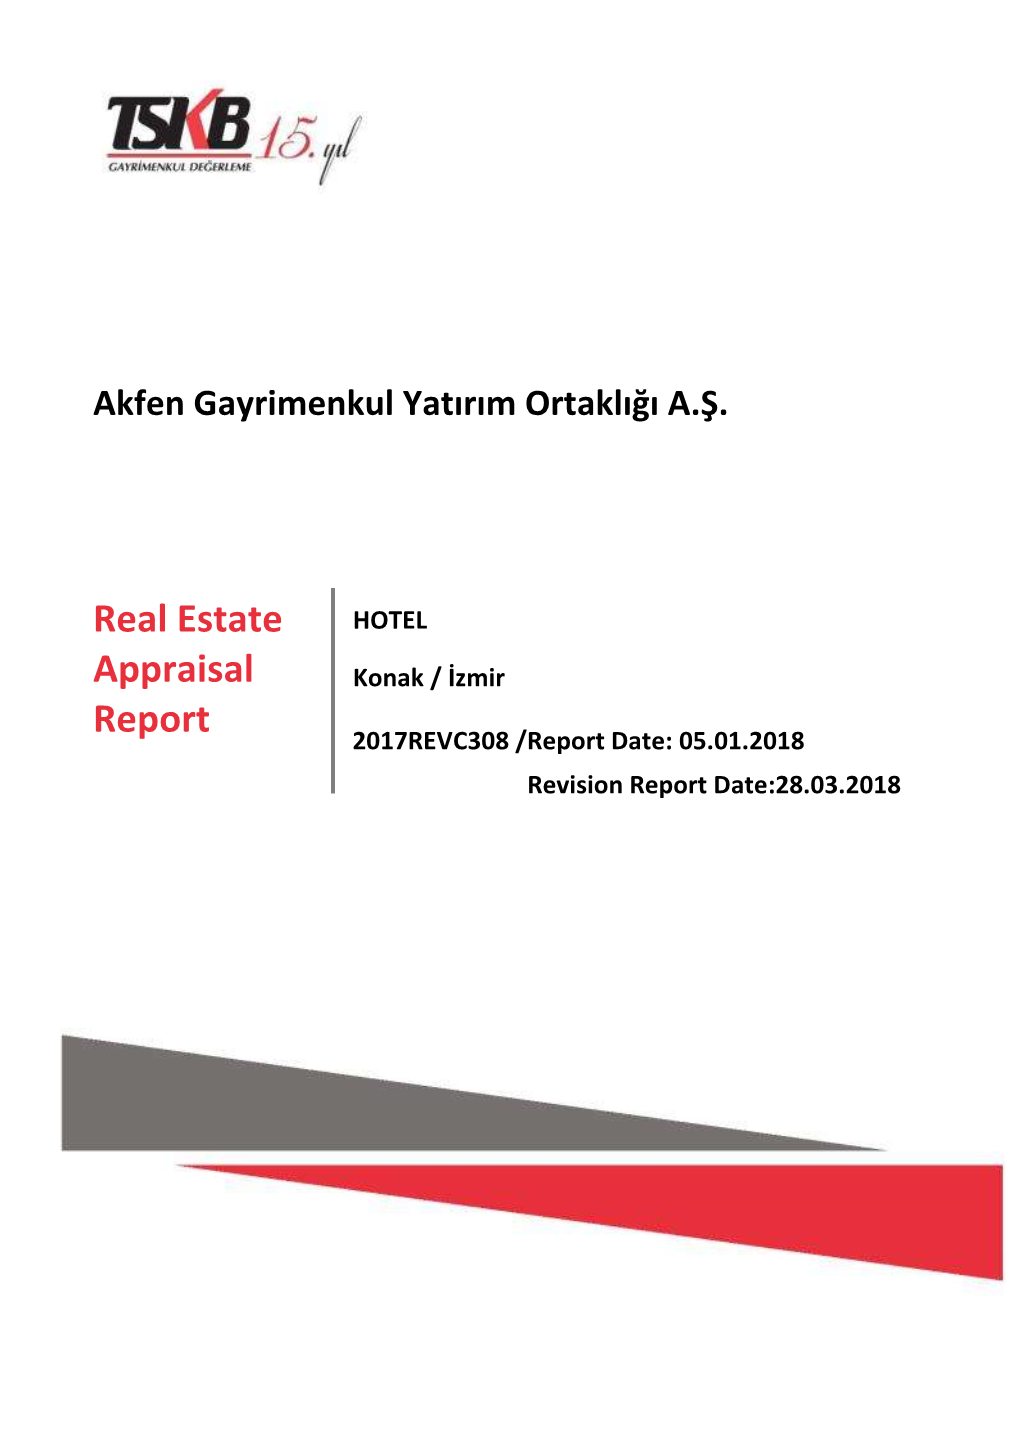 Real Estate Appraisal Report